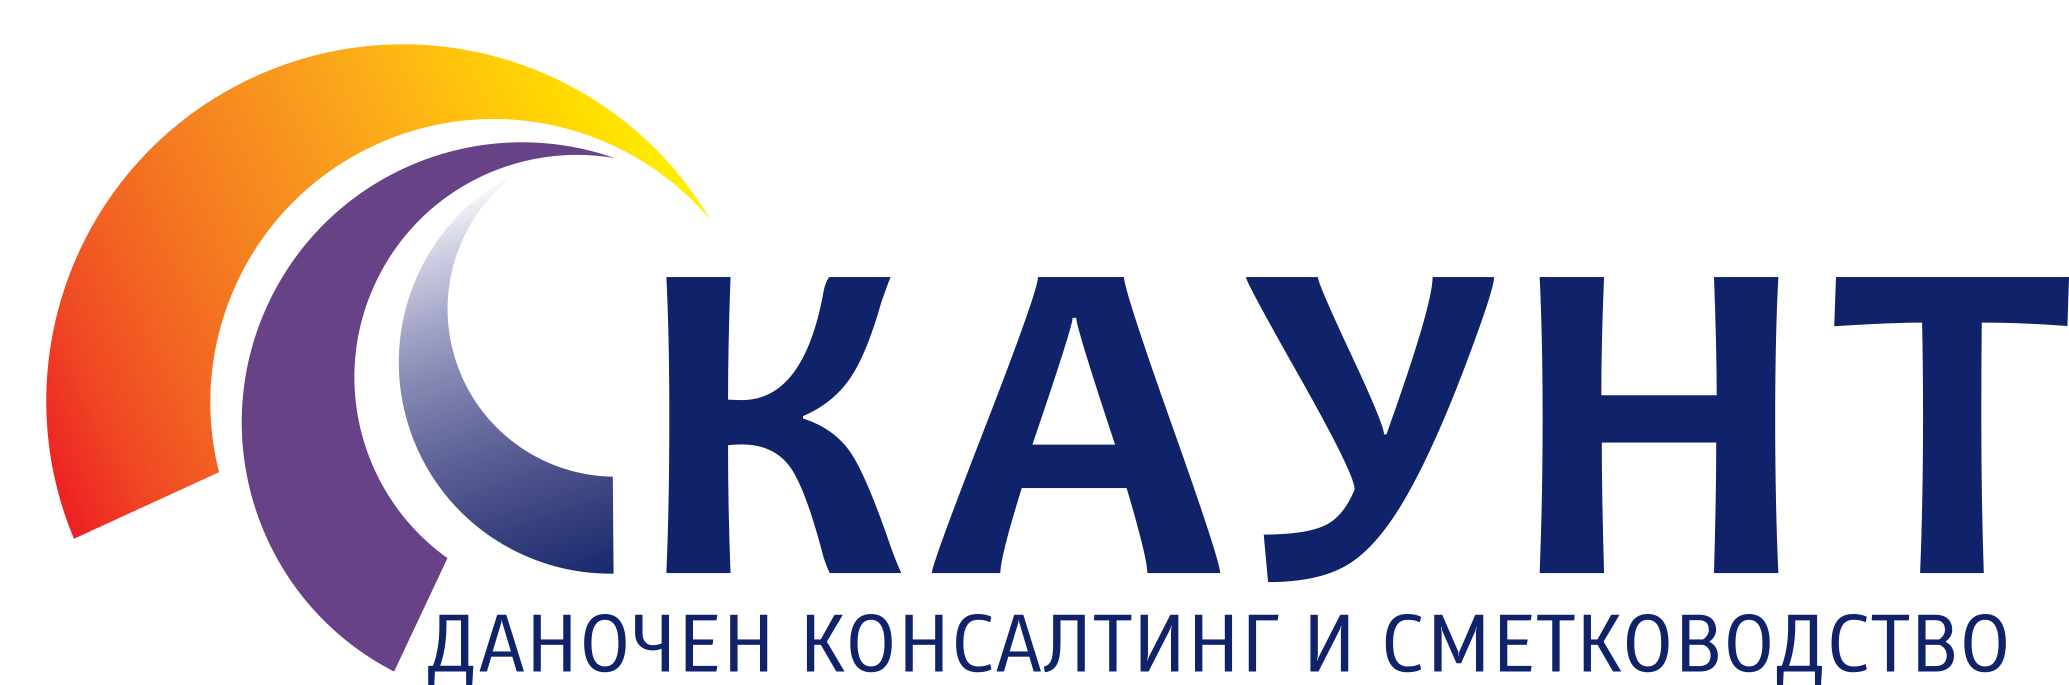 kaunt logo